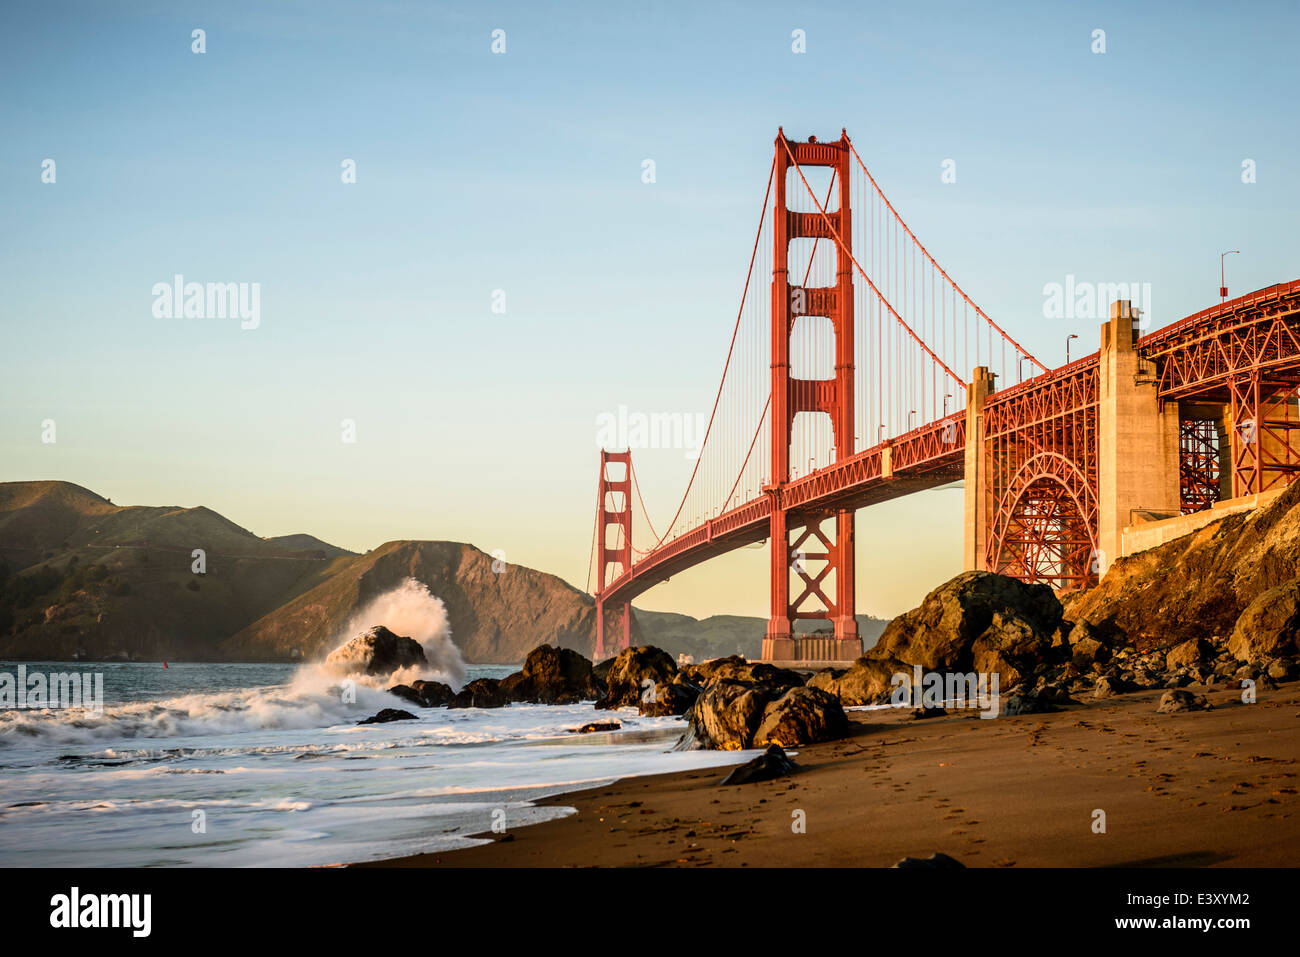 Vista de la playa desde el puente Golden Gate, San Francisco, California, Estados Unidos Foto de stock